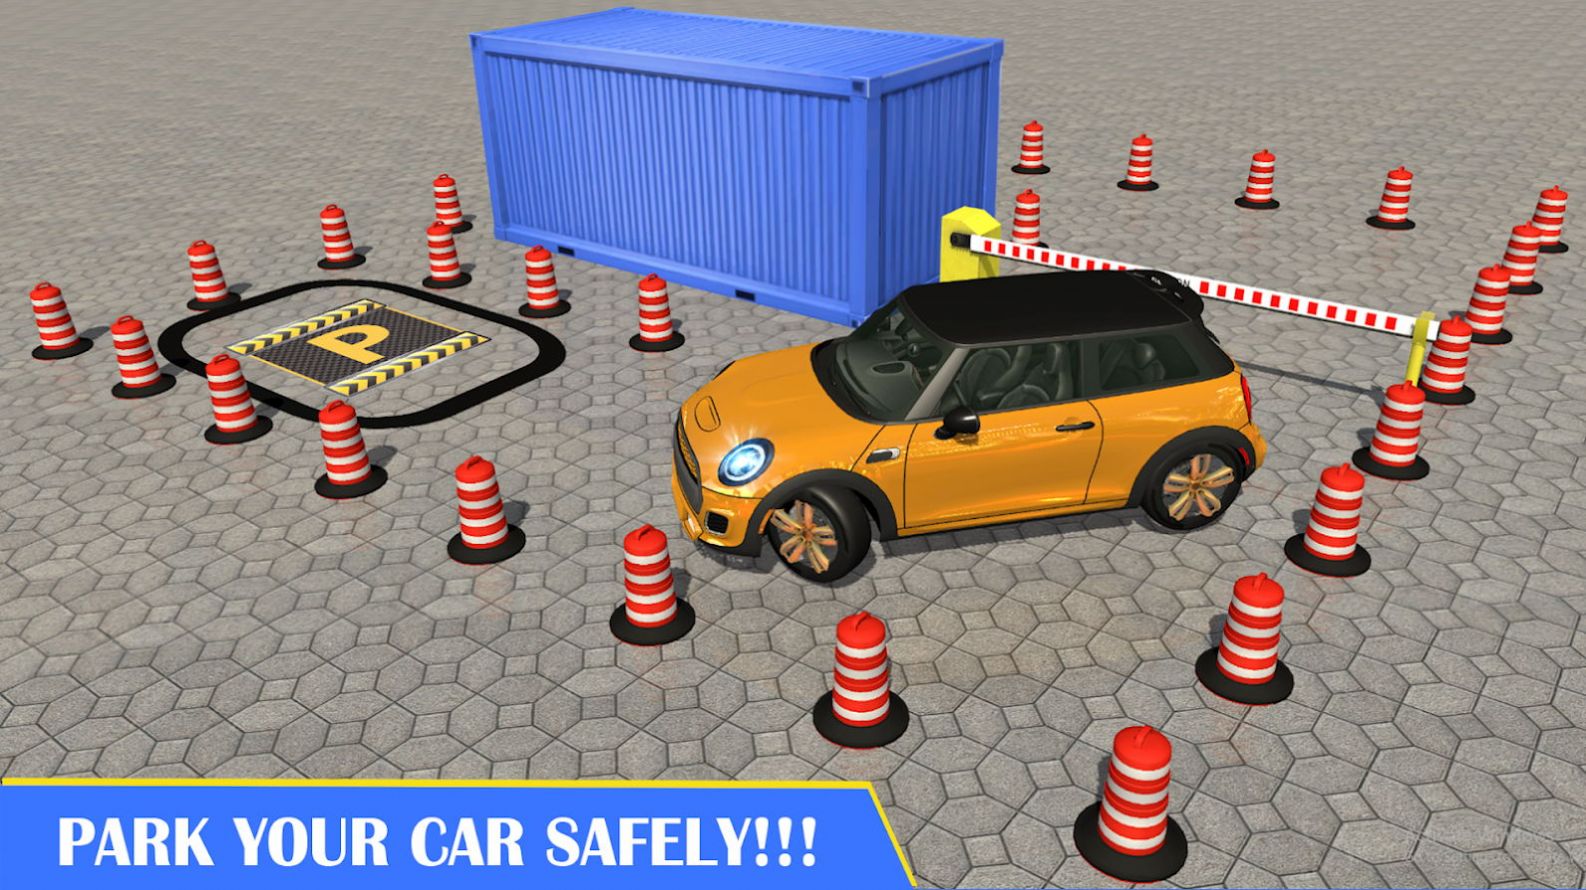 驾驶停车场模拟器好玩吗 驾驶停车场模拟器玩法简介